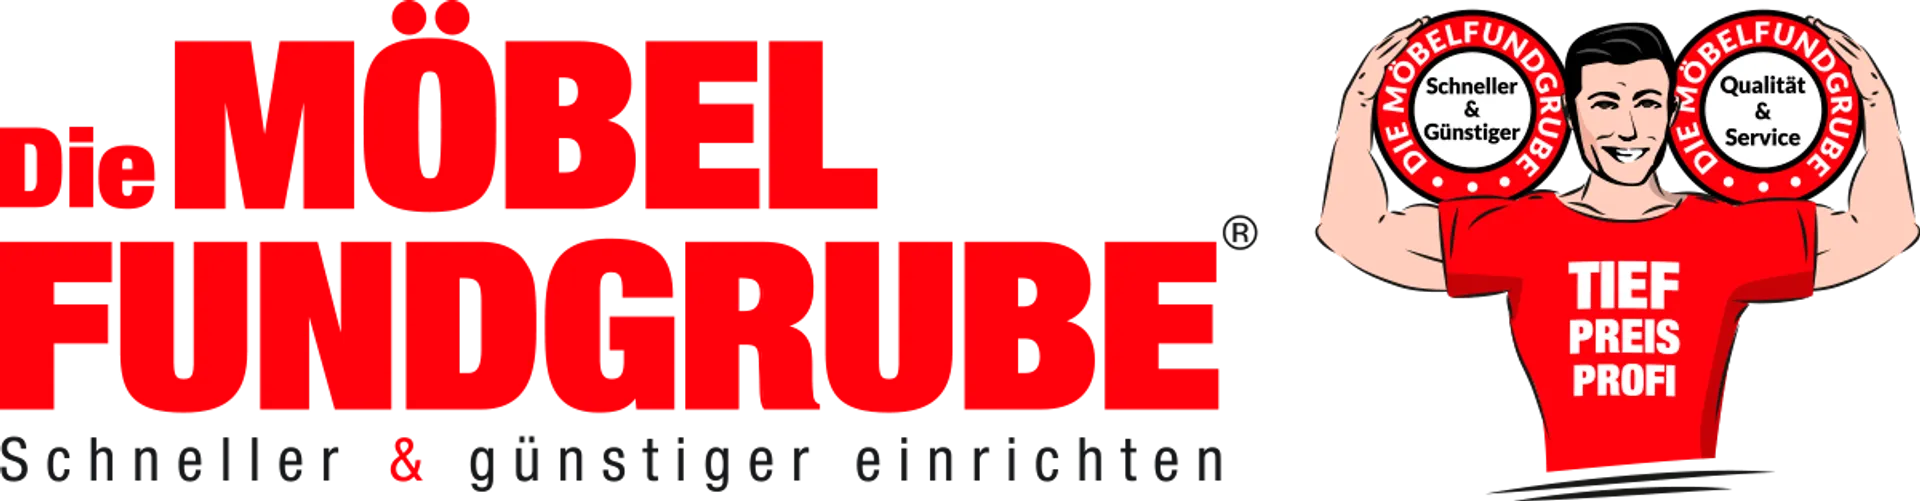 MÖBELFUNDGRUBE logo